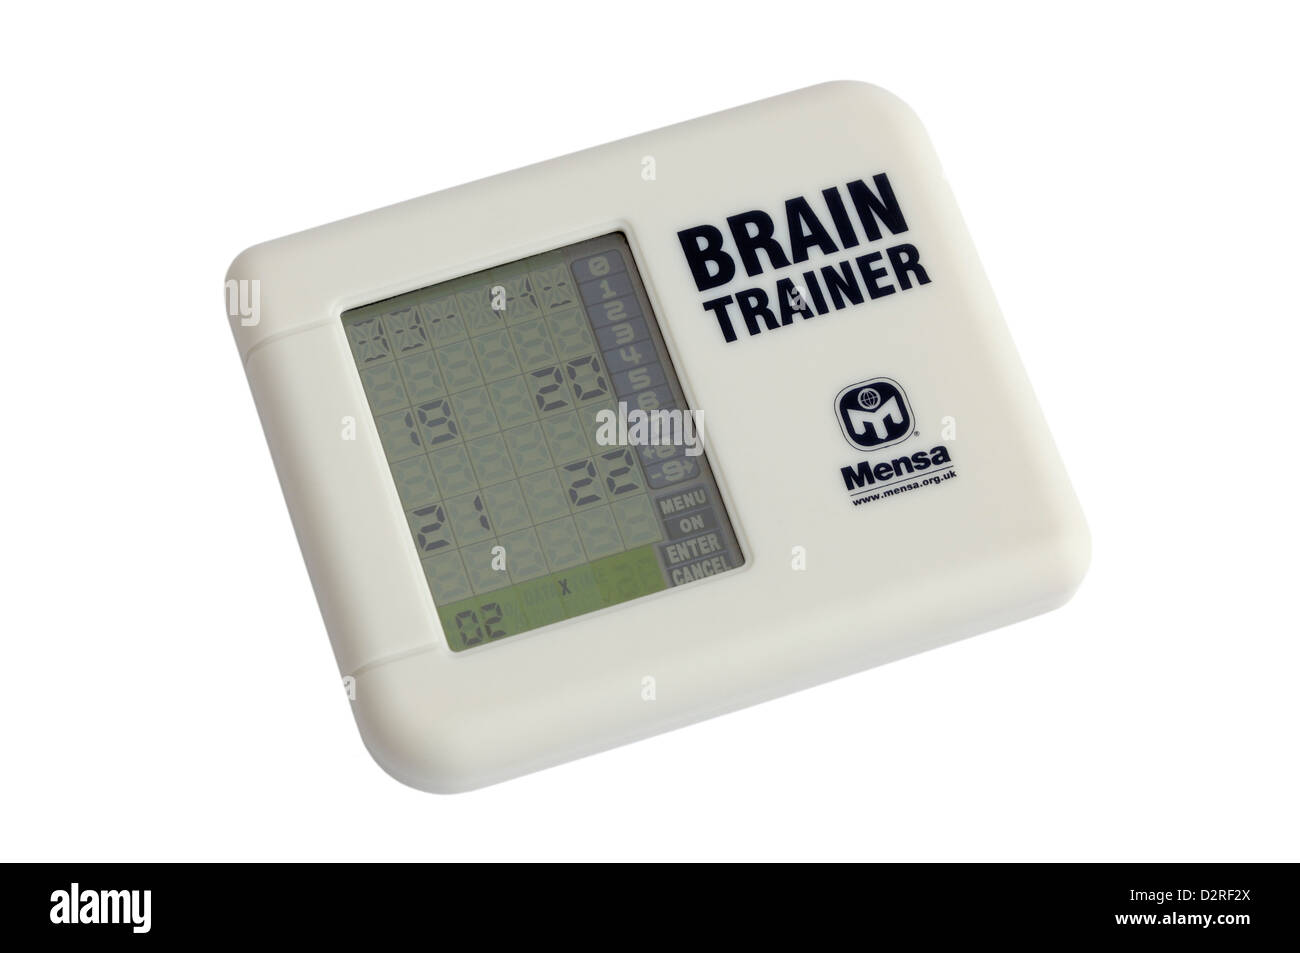 A Mensa brain trainer électronique Banque D'Images